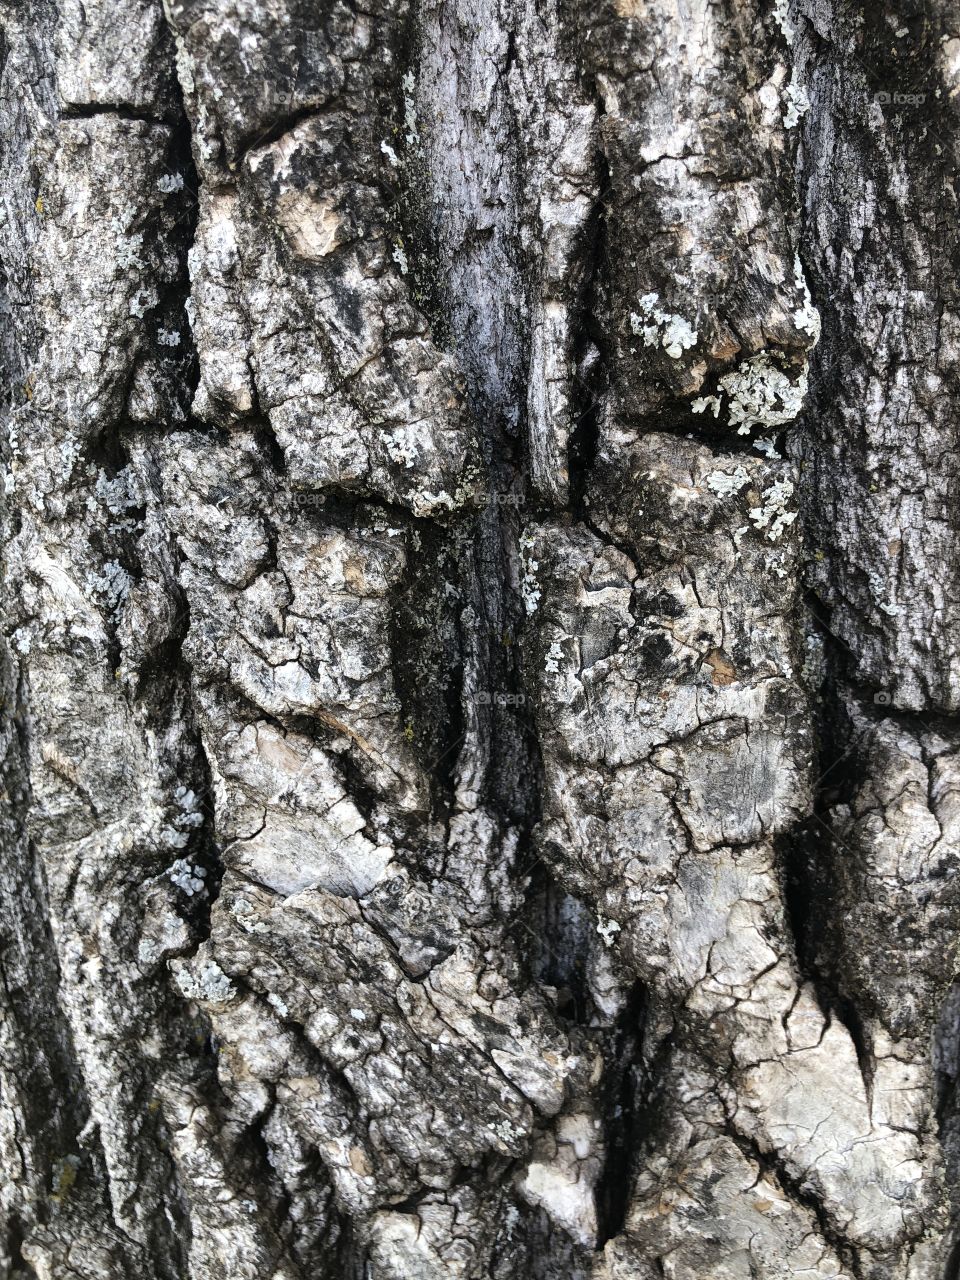 Weathered old oak tree bark